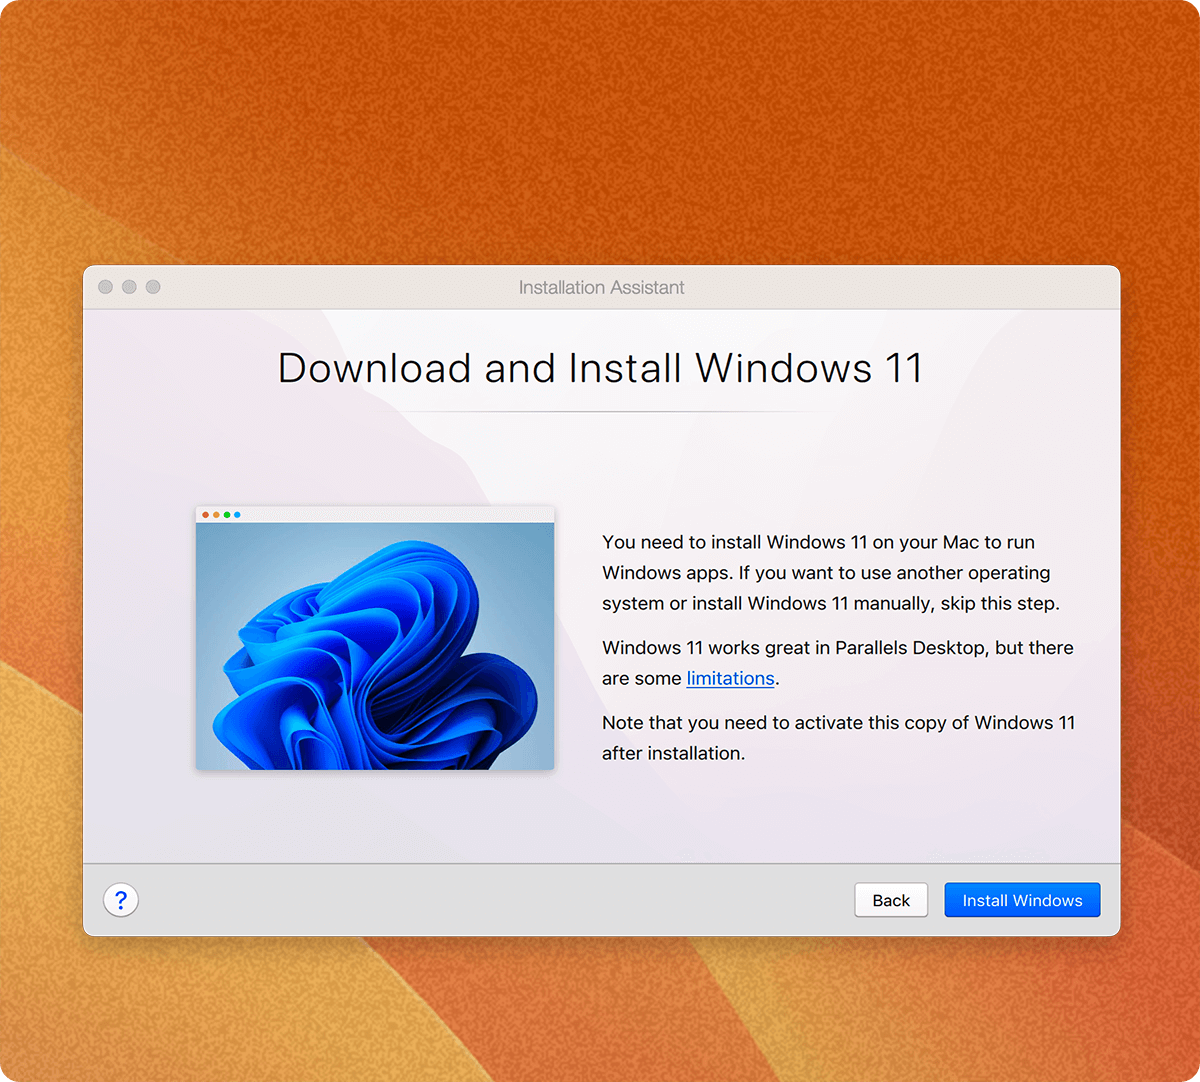 按兩下即可在 Mac 上下載、安裝和設定 Windows 11